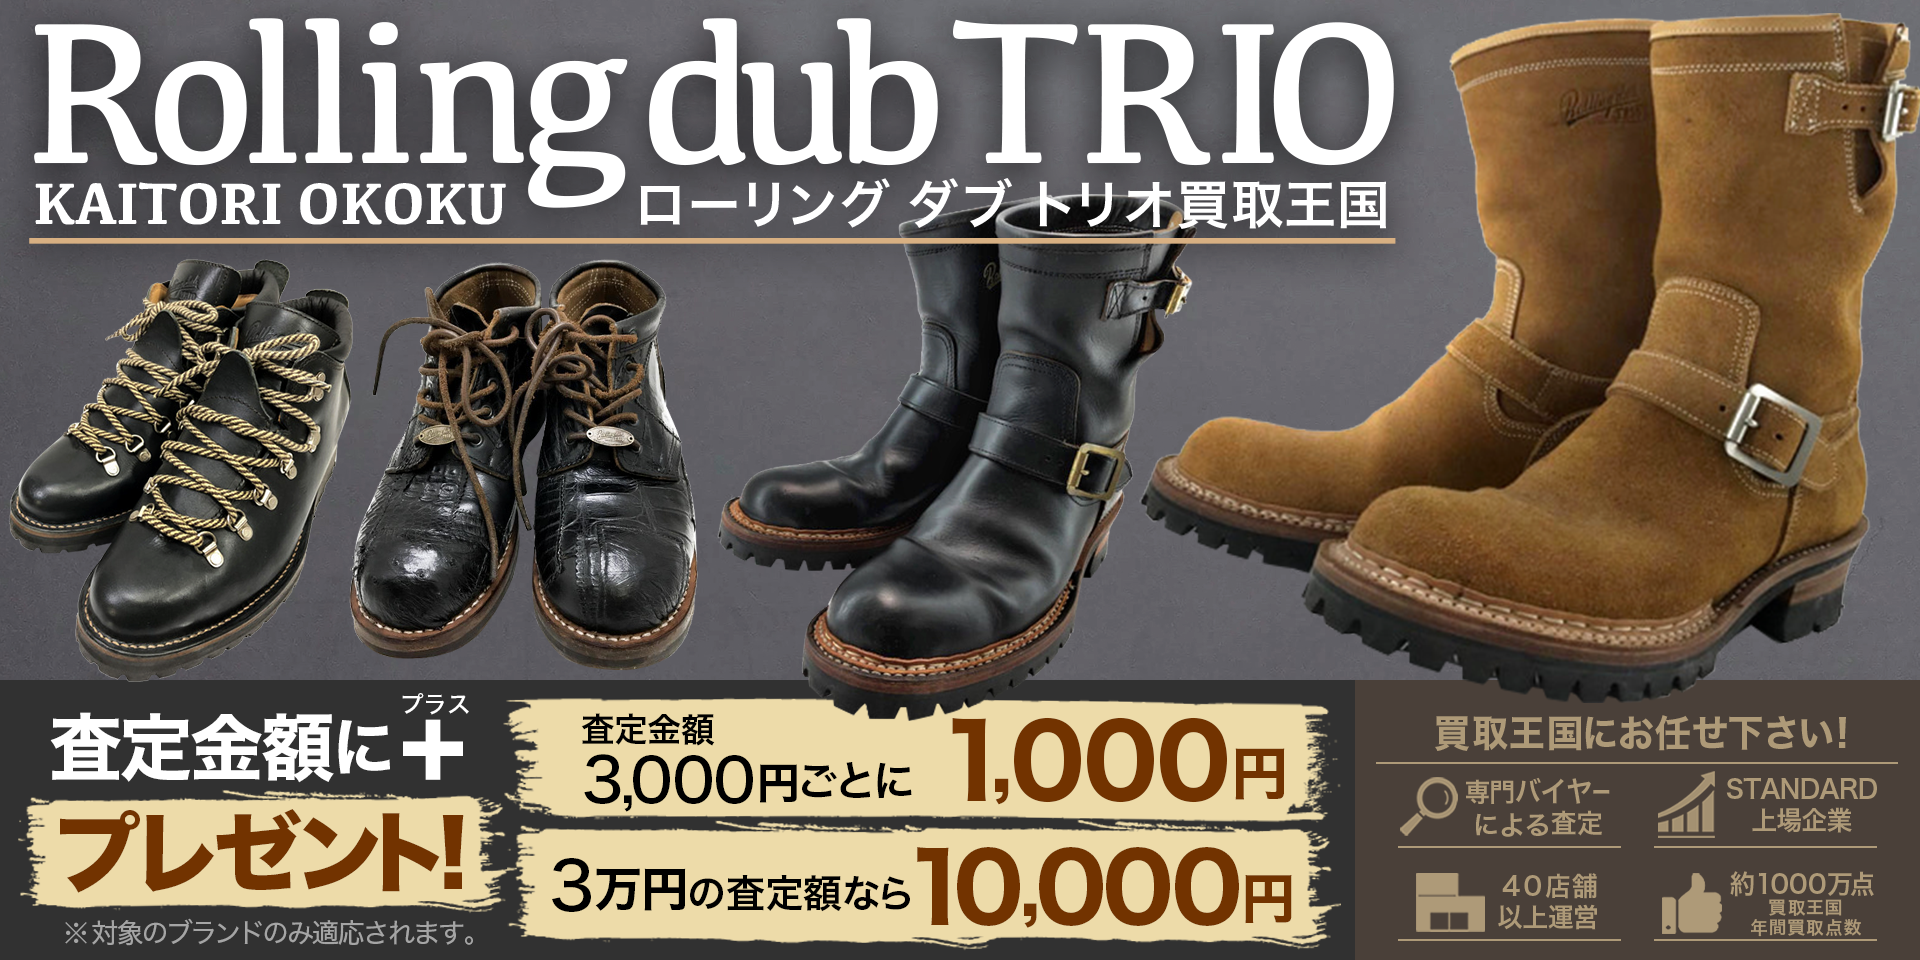 Rolling dub trioのキービジュアル